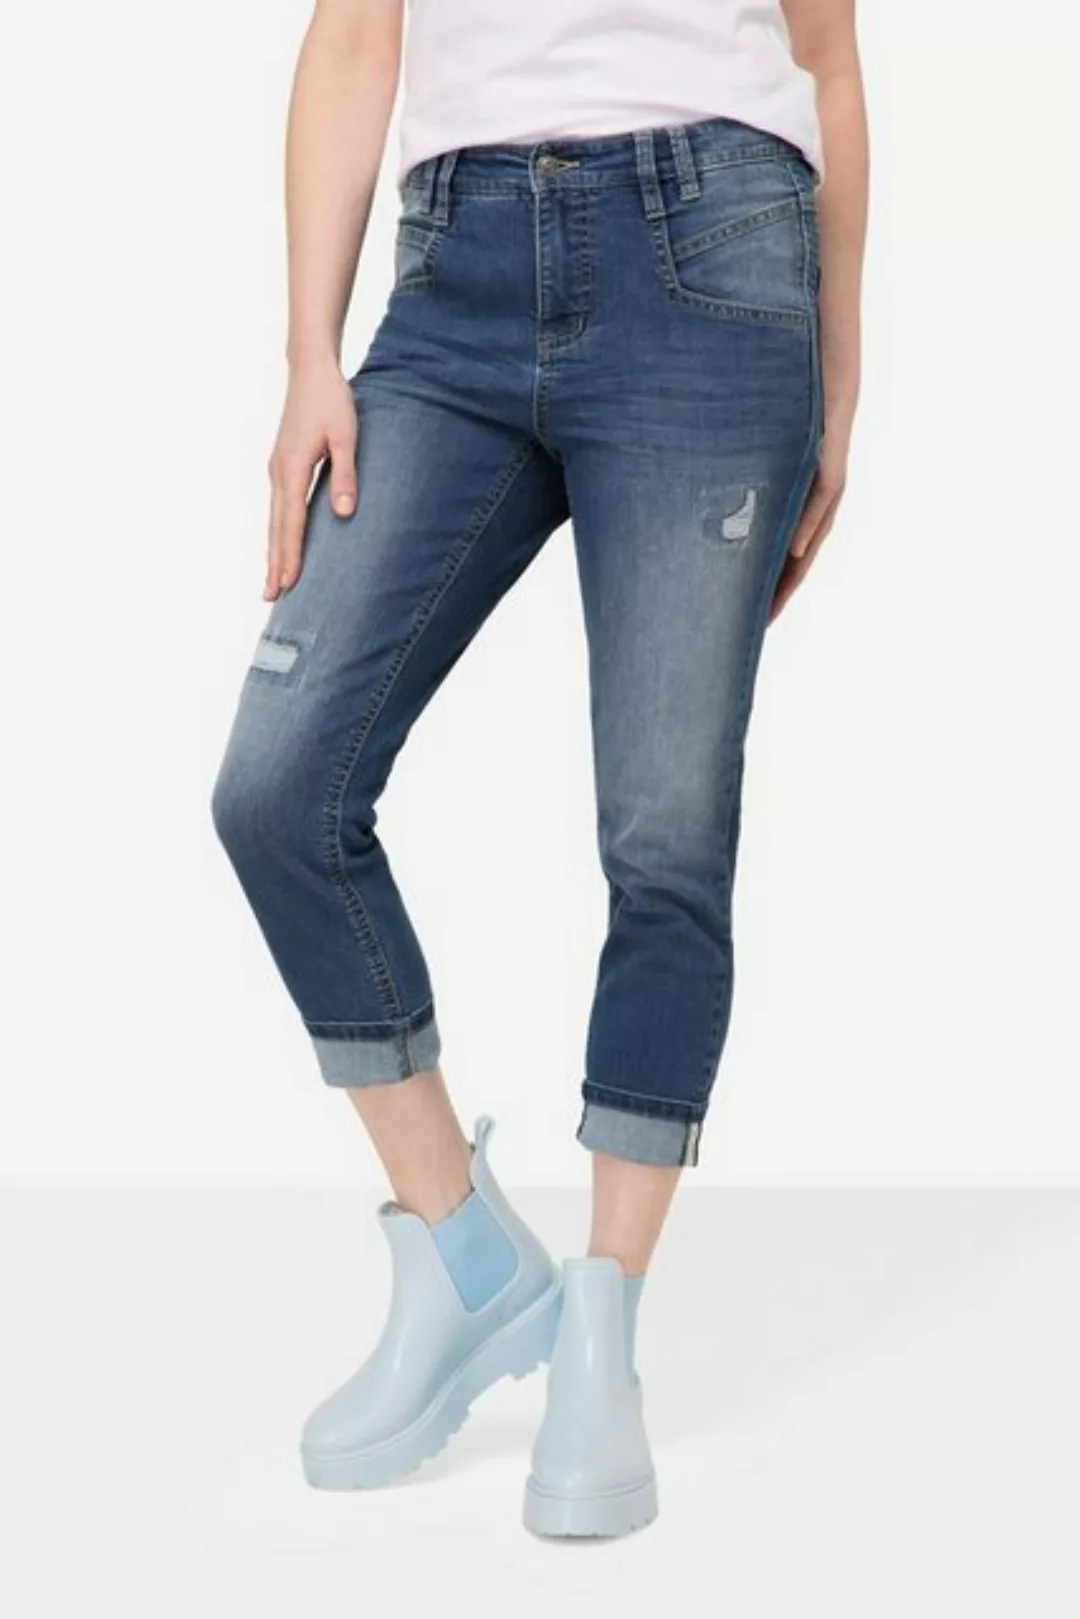 Laurasøn Regular-fit-Jeans 7/8-Jeans Slim Fit Destroy Look 5-Pocket günstig online kaufen